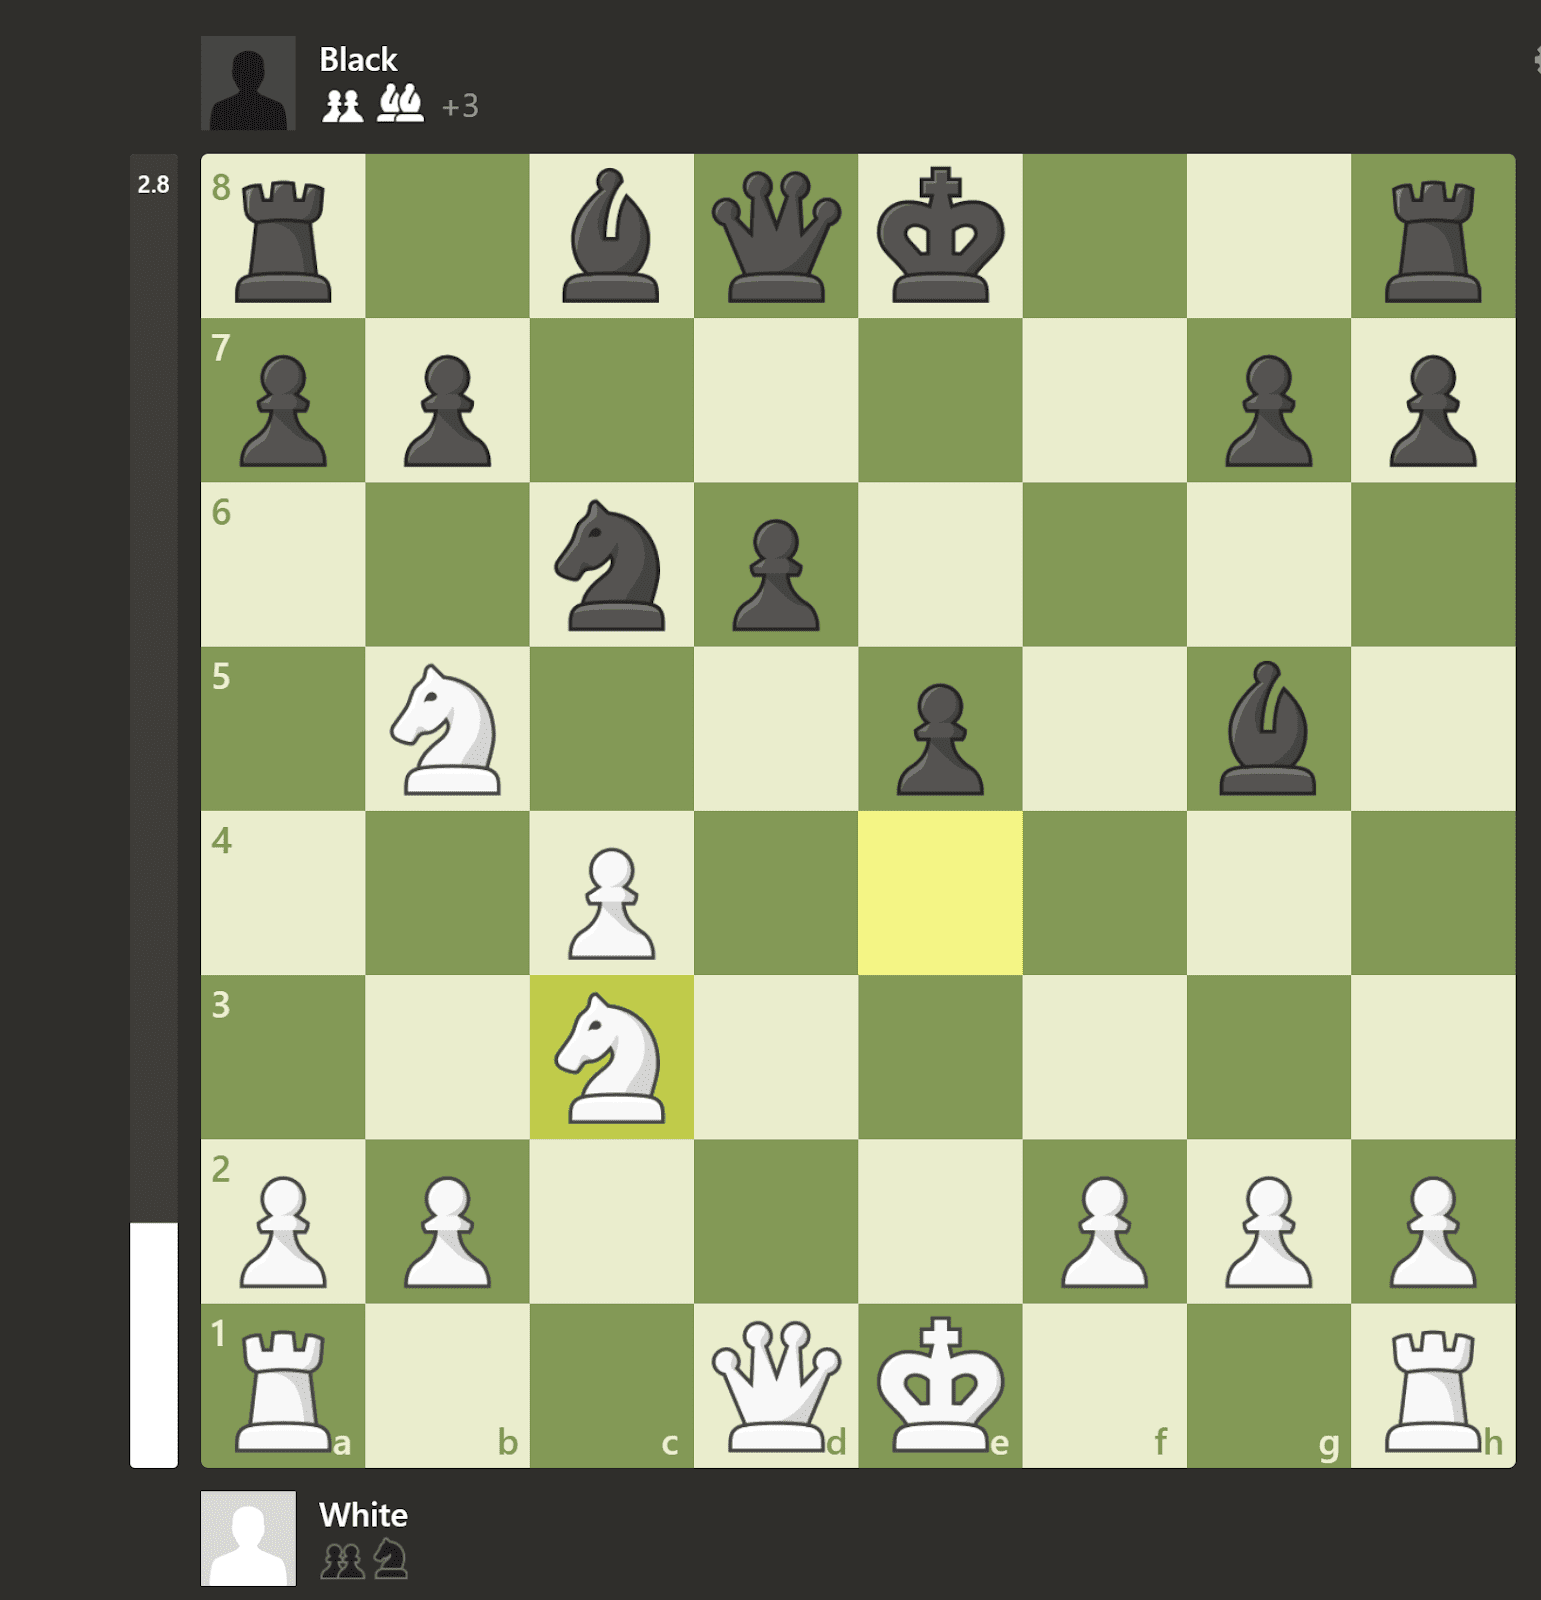 Έχει το ChatGPT τη δυνατότητα να γίνει ένας νέος σούπερ γκραν μάστερ στο σκάκι;